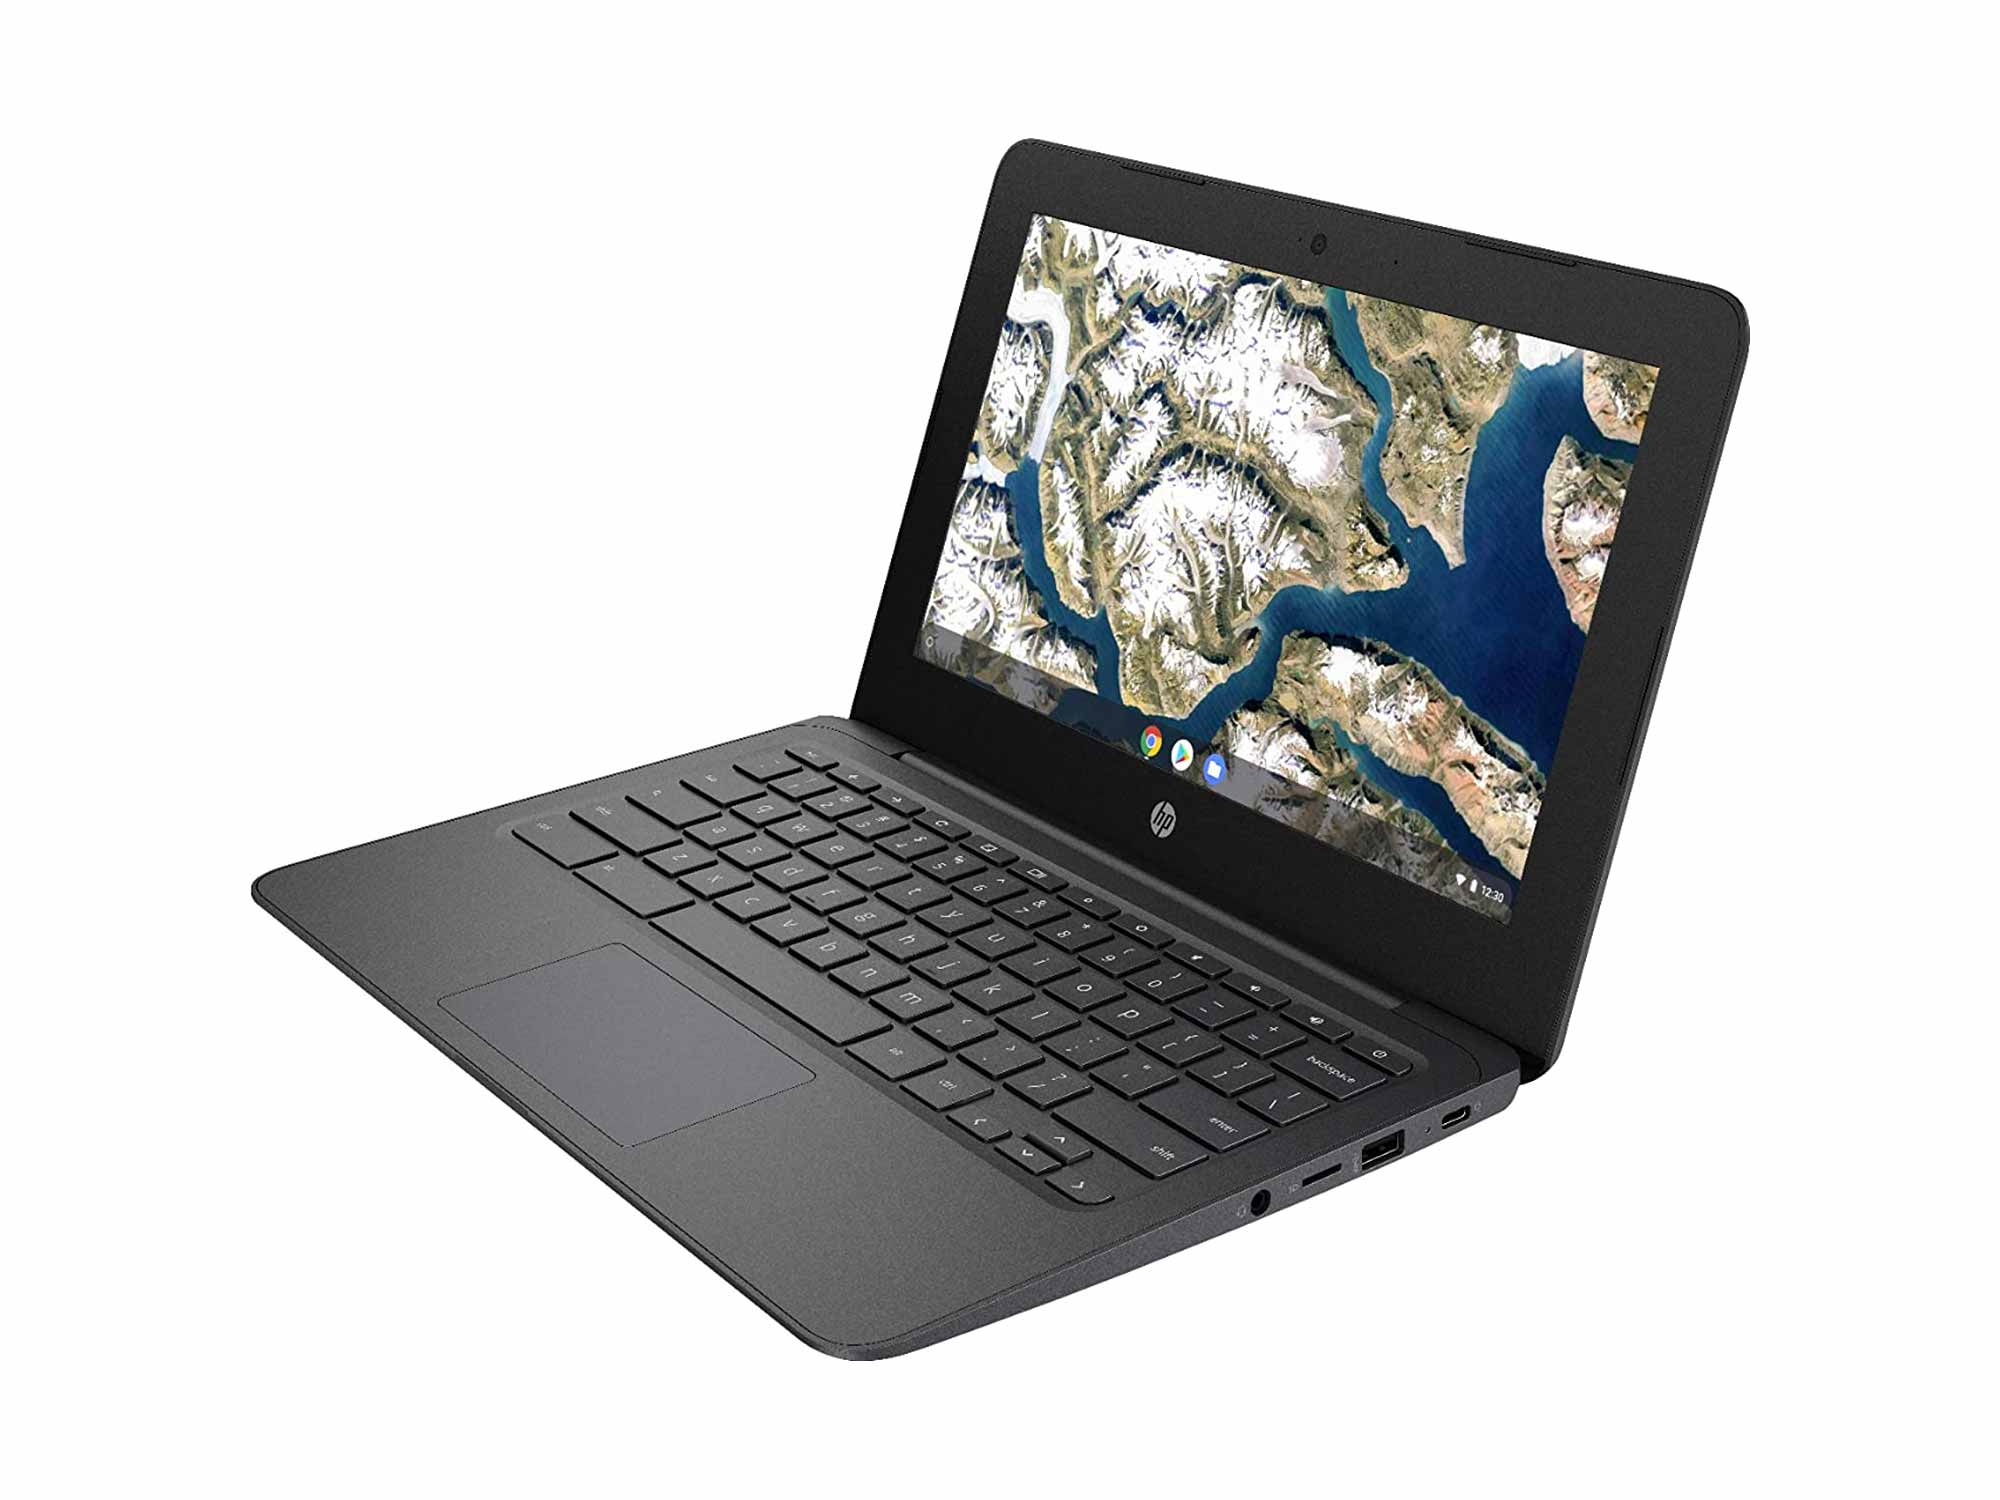 2021 Newest HP Chromebook 11.6 Inch Laptop, Intel Celeron N3350 up to 2.4 GHz, 4GB LPDDR2 RAM, 32GB eMMC, WiFi, Bluetooth, Webcam, Chrome OS + NexiGo 32GB MicroSD Card Bundle